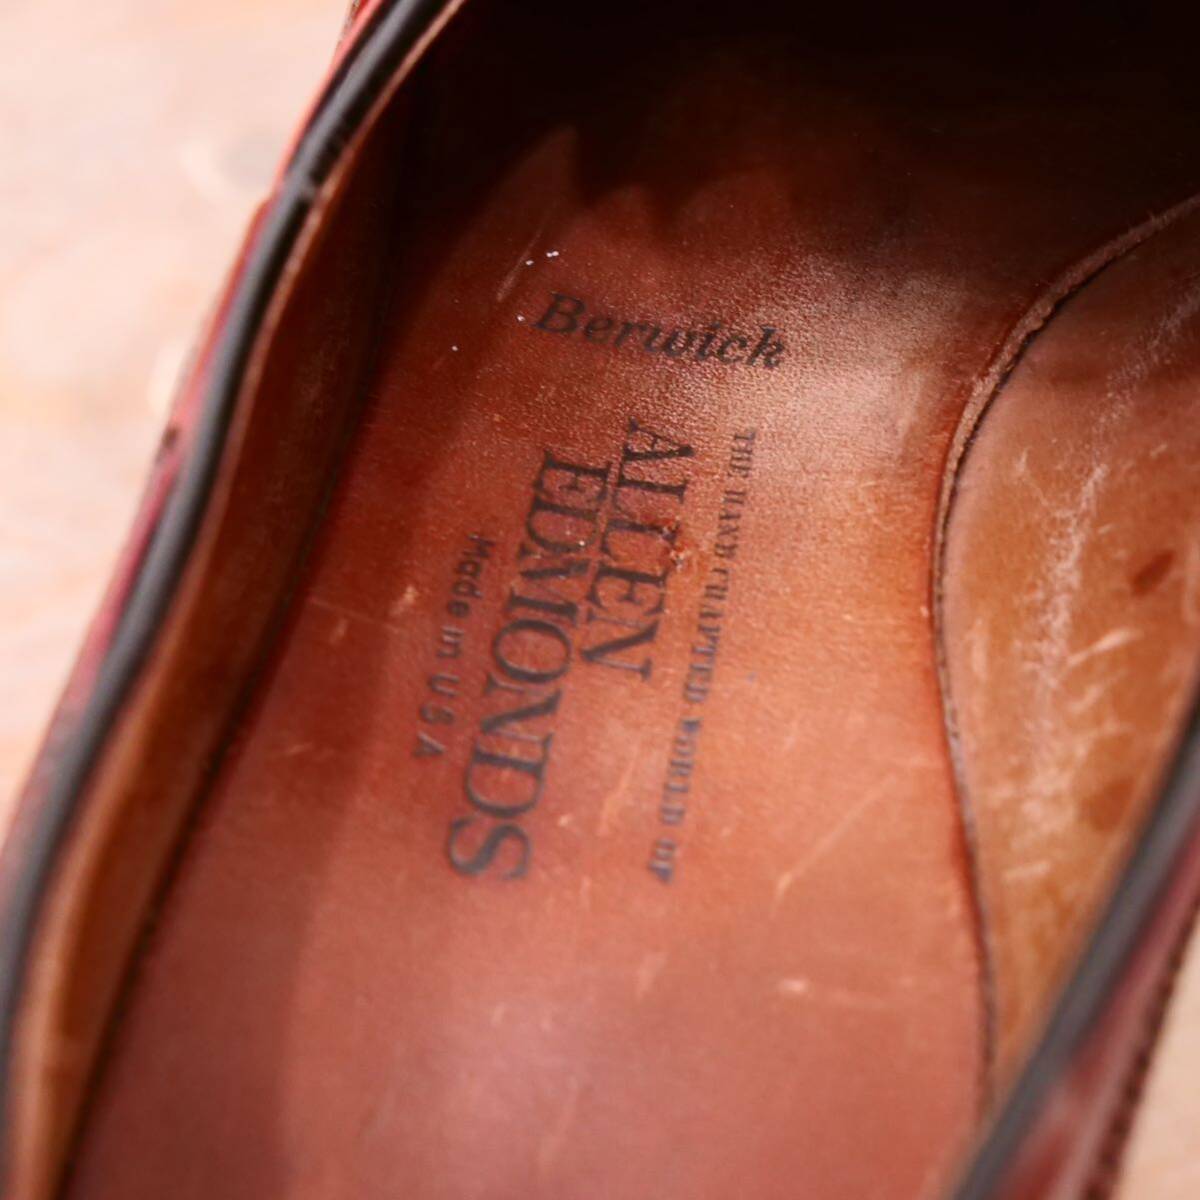  хорошая вещь *[Allen Edmonds]a Len Ed monz Wing chip Loafer US10.5C бизнес обувь casual мужской кожа обувь 